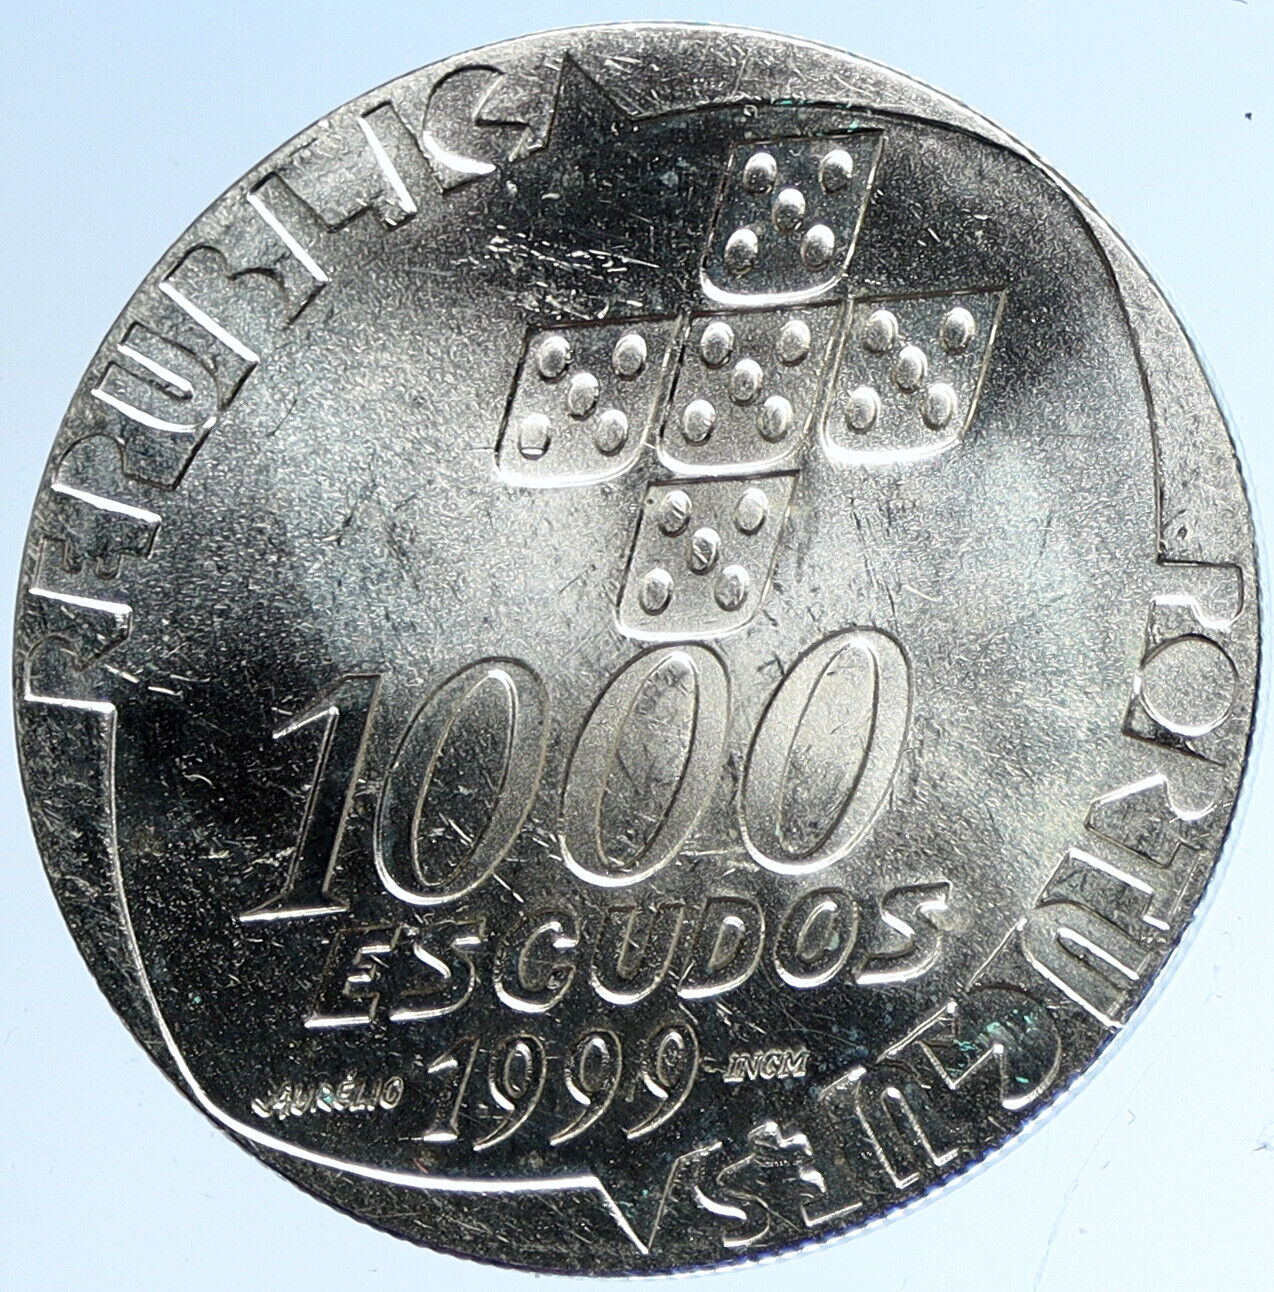 1999 PORTUGAL Revolution of April 25th OLD Proof Silver 1000 Escudo Coin i113209